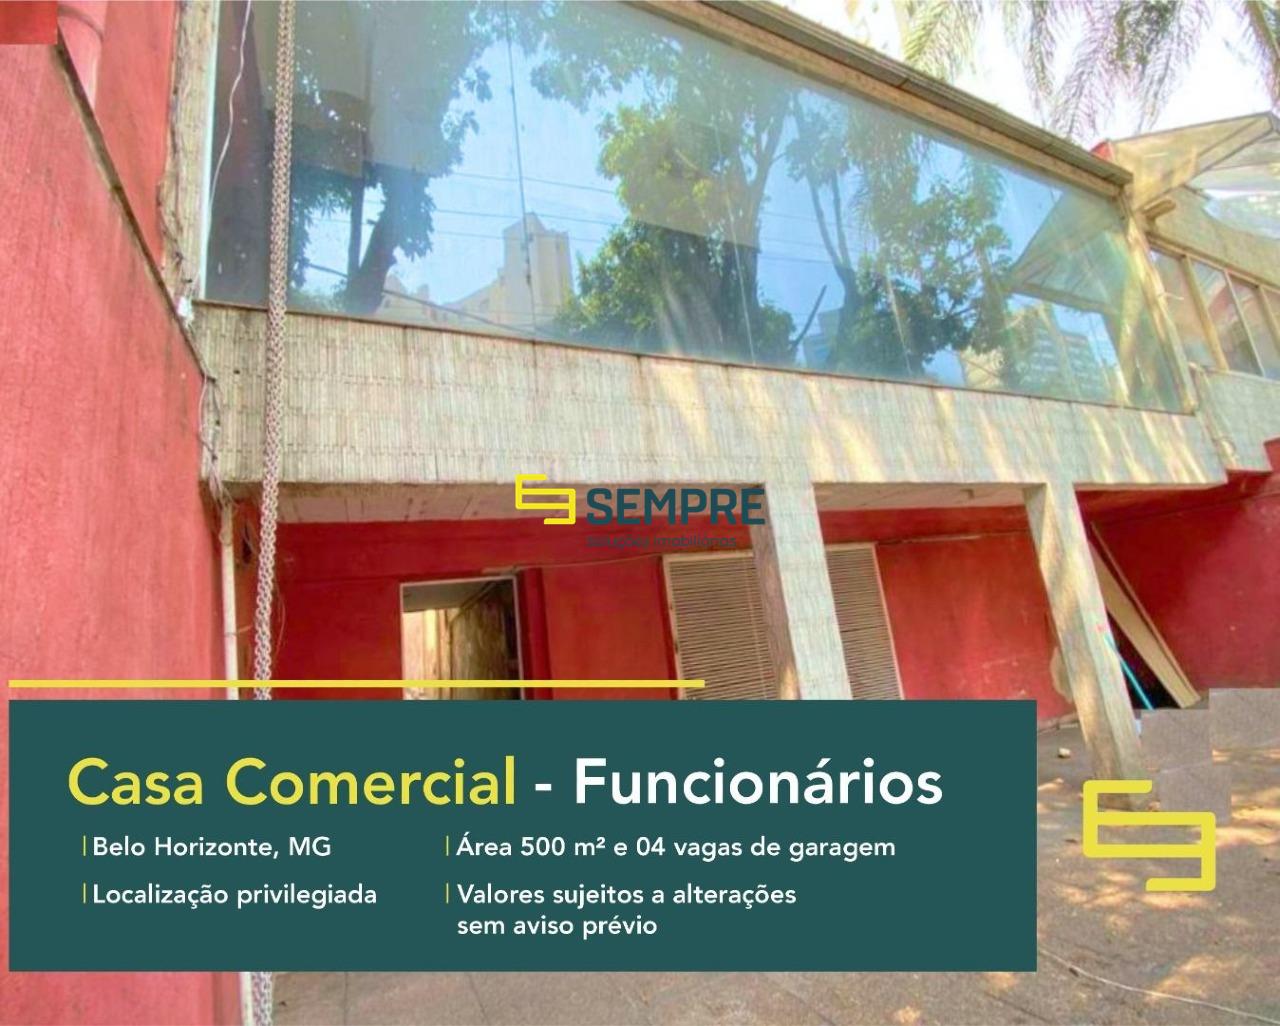 Casa comercial para alugar em BH no bairro Funcionários, em excelente localização. O estabelecimento comercial conta com área de 500 m².